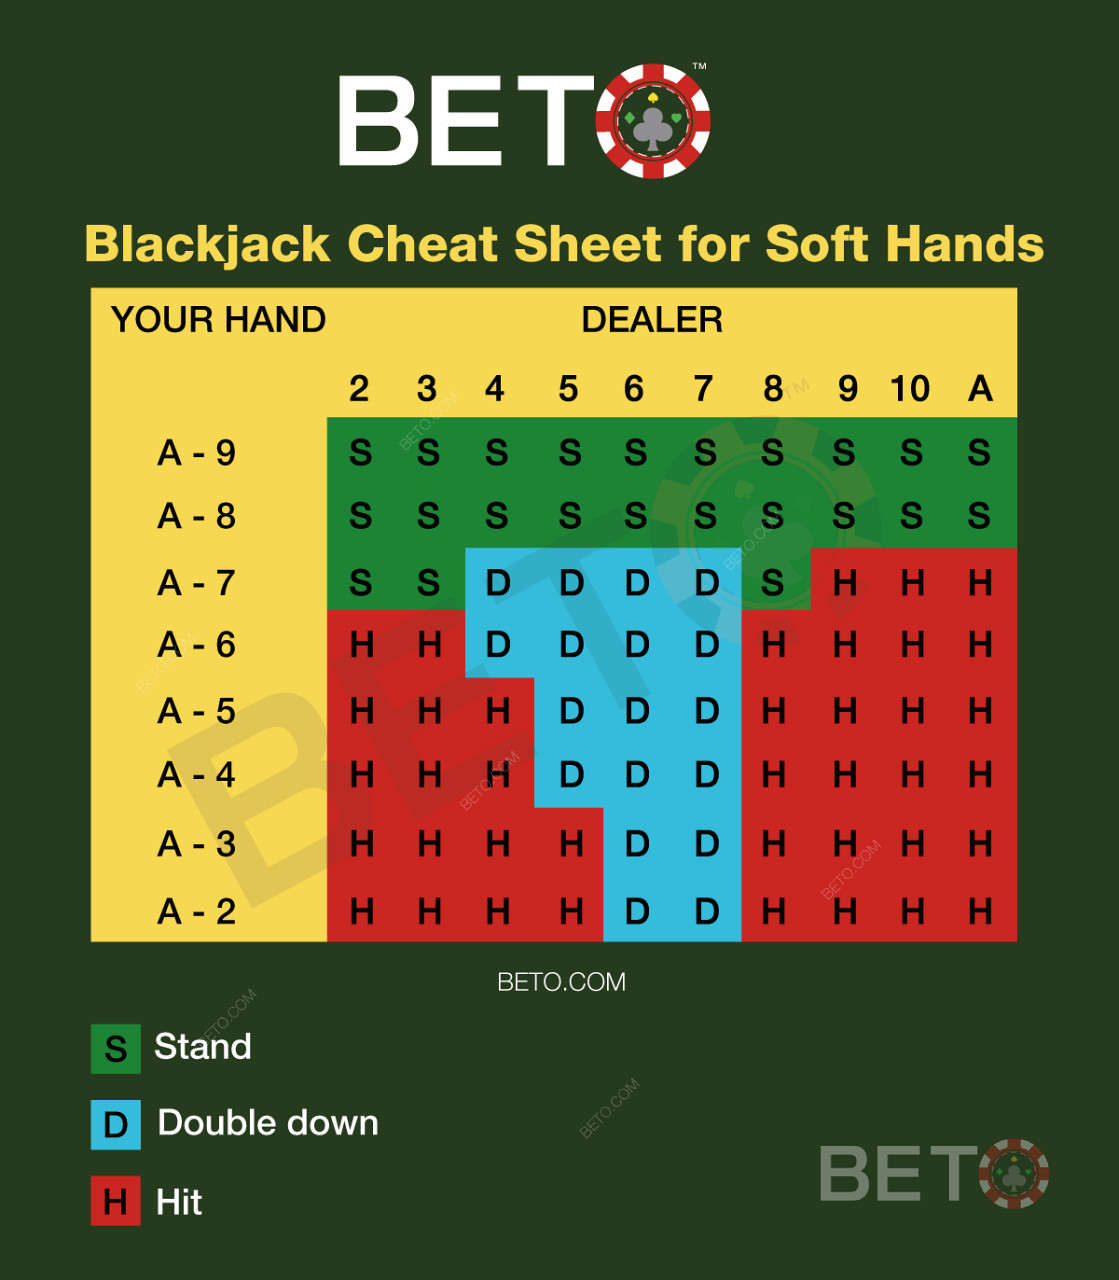 Blackjack-kaavio blackjackin pehmeiden käsien osalta